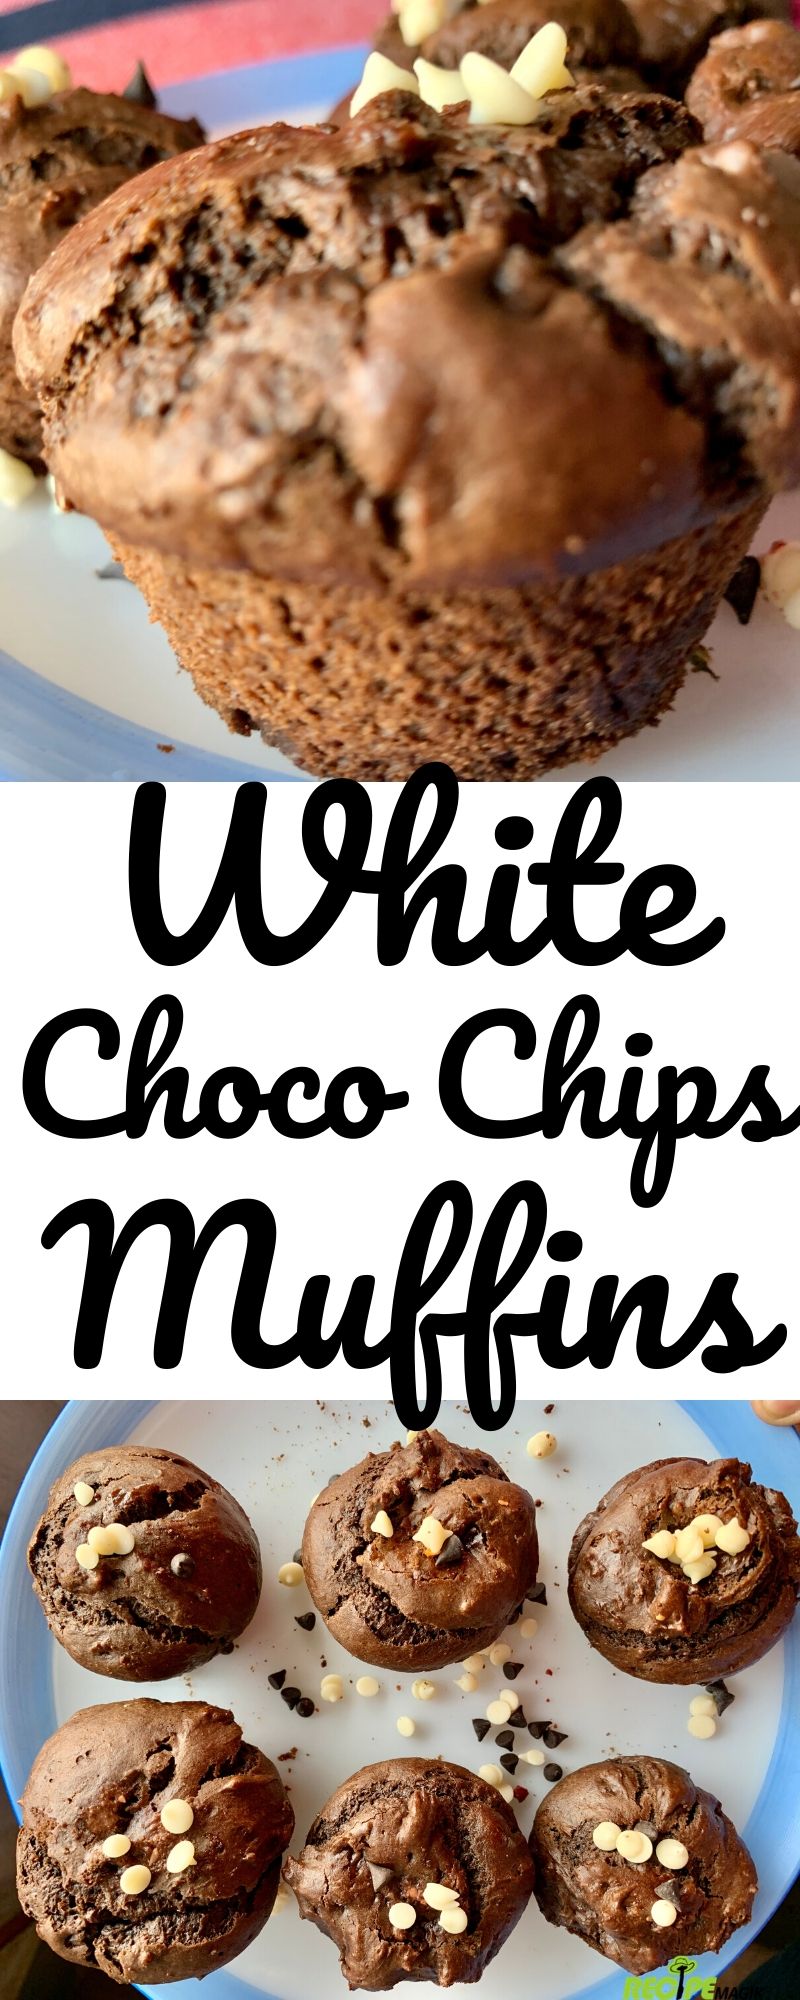 White choco chip muffins